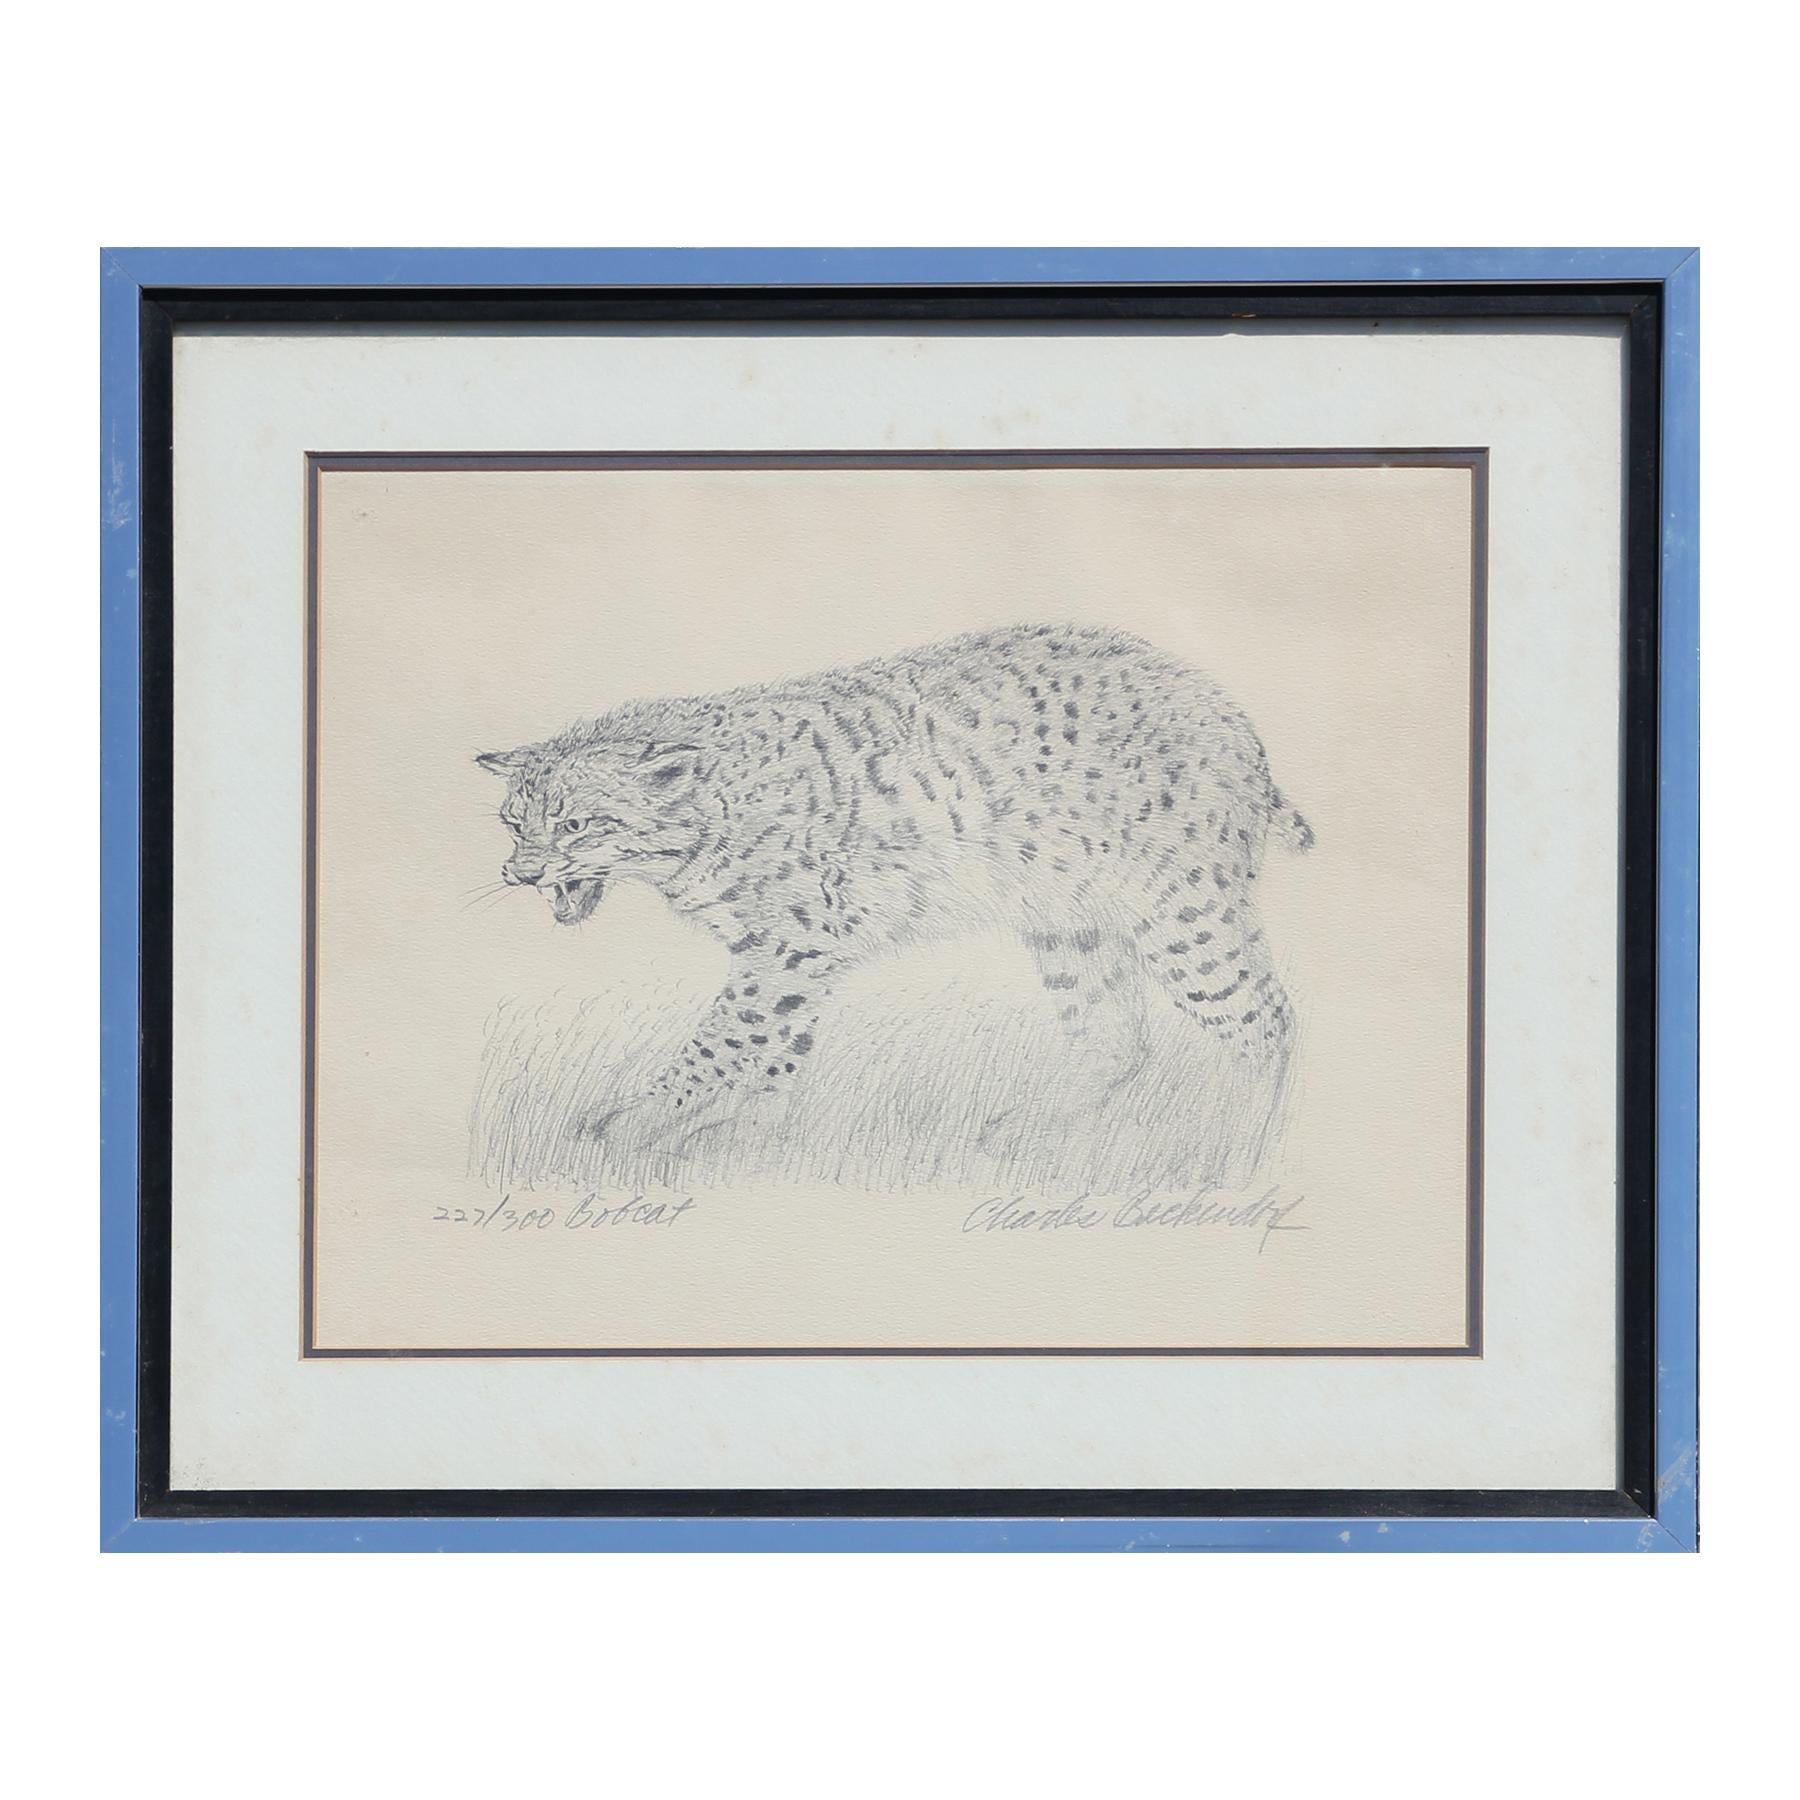 Charles Beckendorf Portrait Print – Moderner texanischer Bobcat-Druck mit schwarzem und weißem Tier-Wildlife-Muster